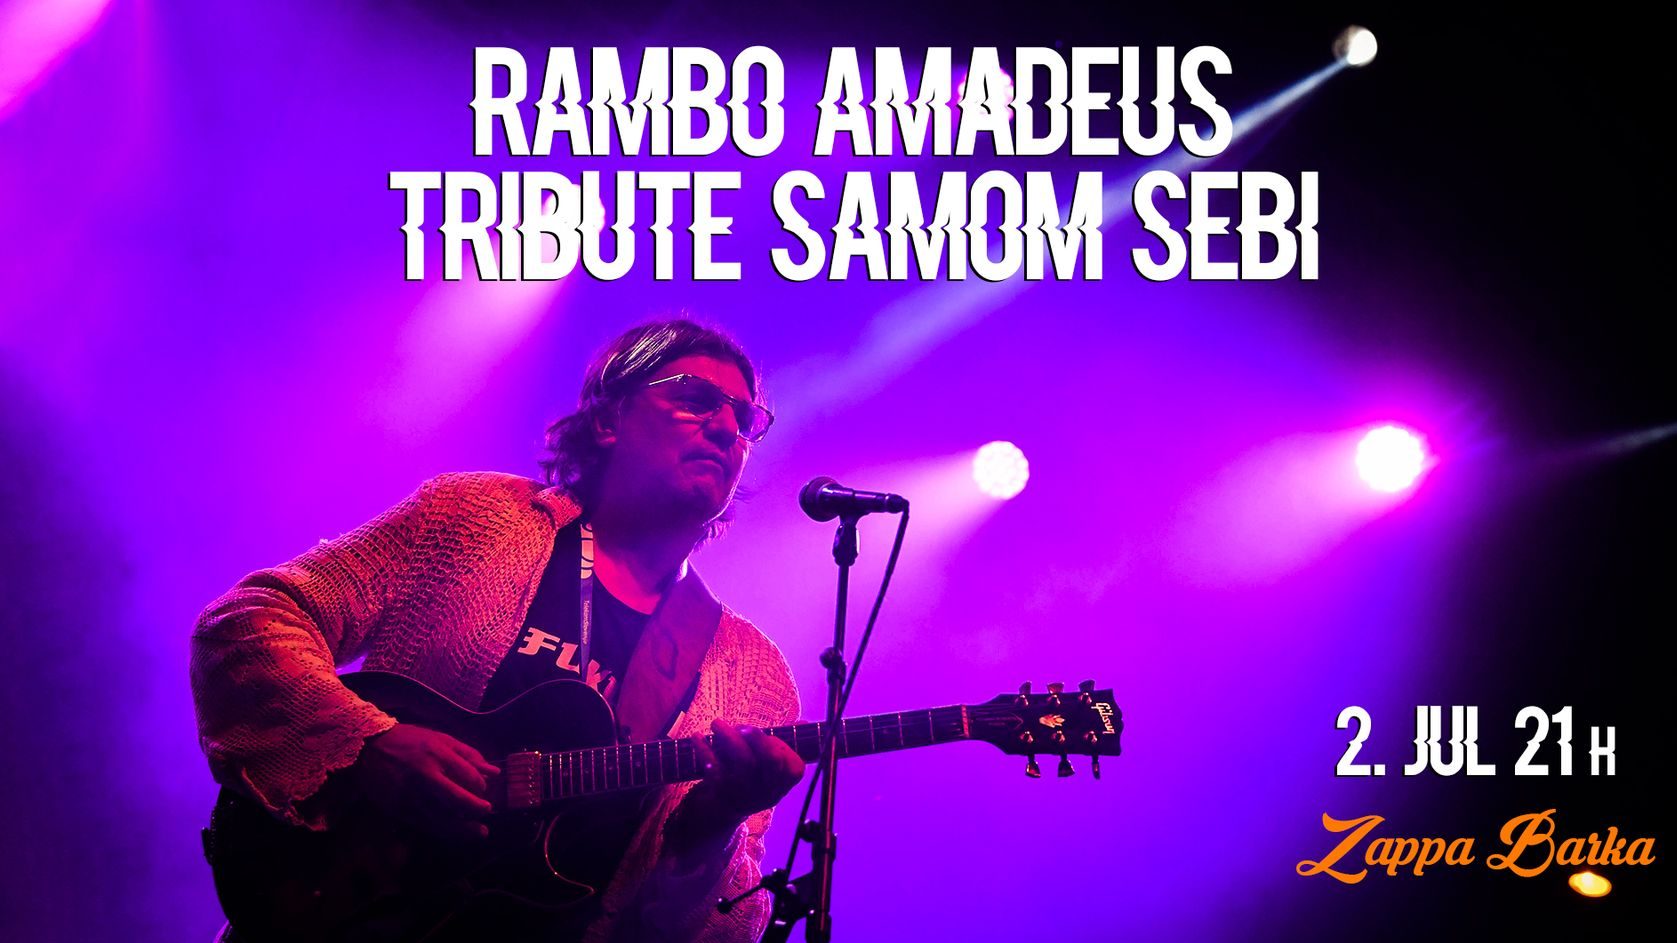 Rambo Amadeus - Tribute samom sebi